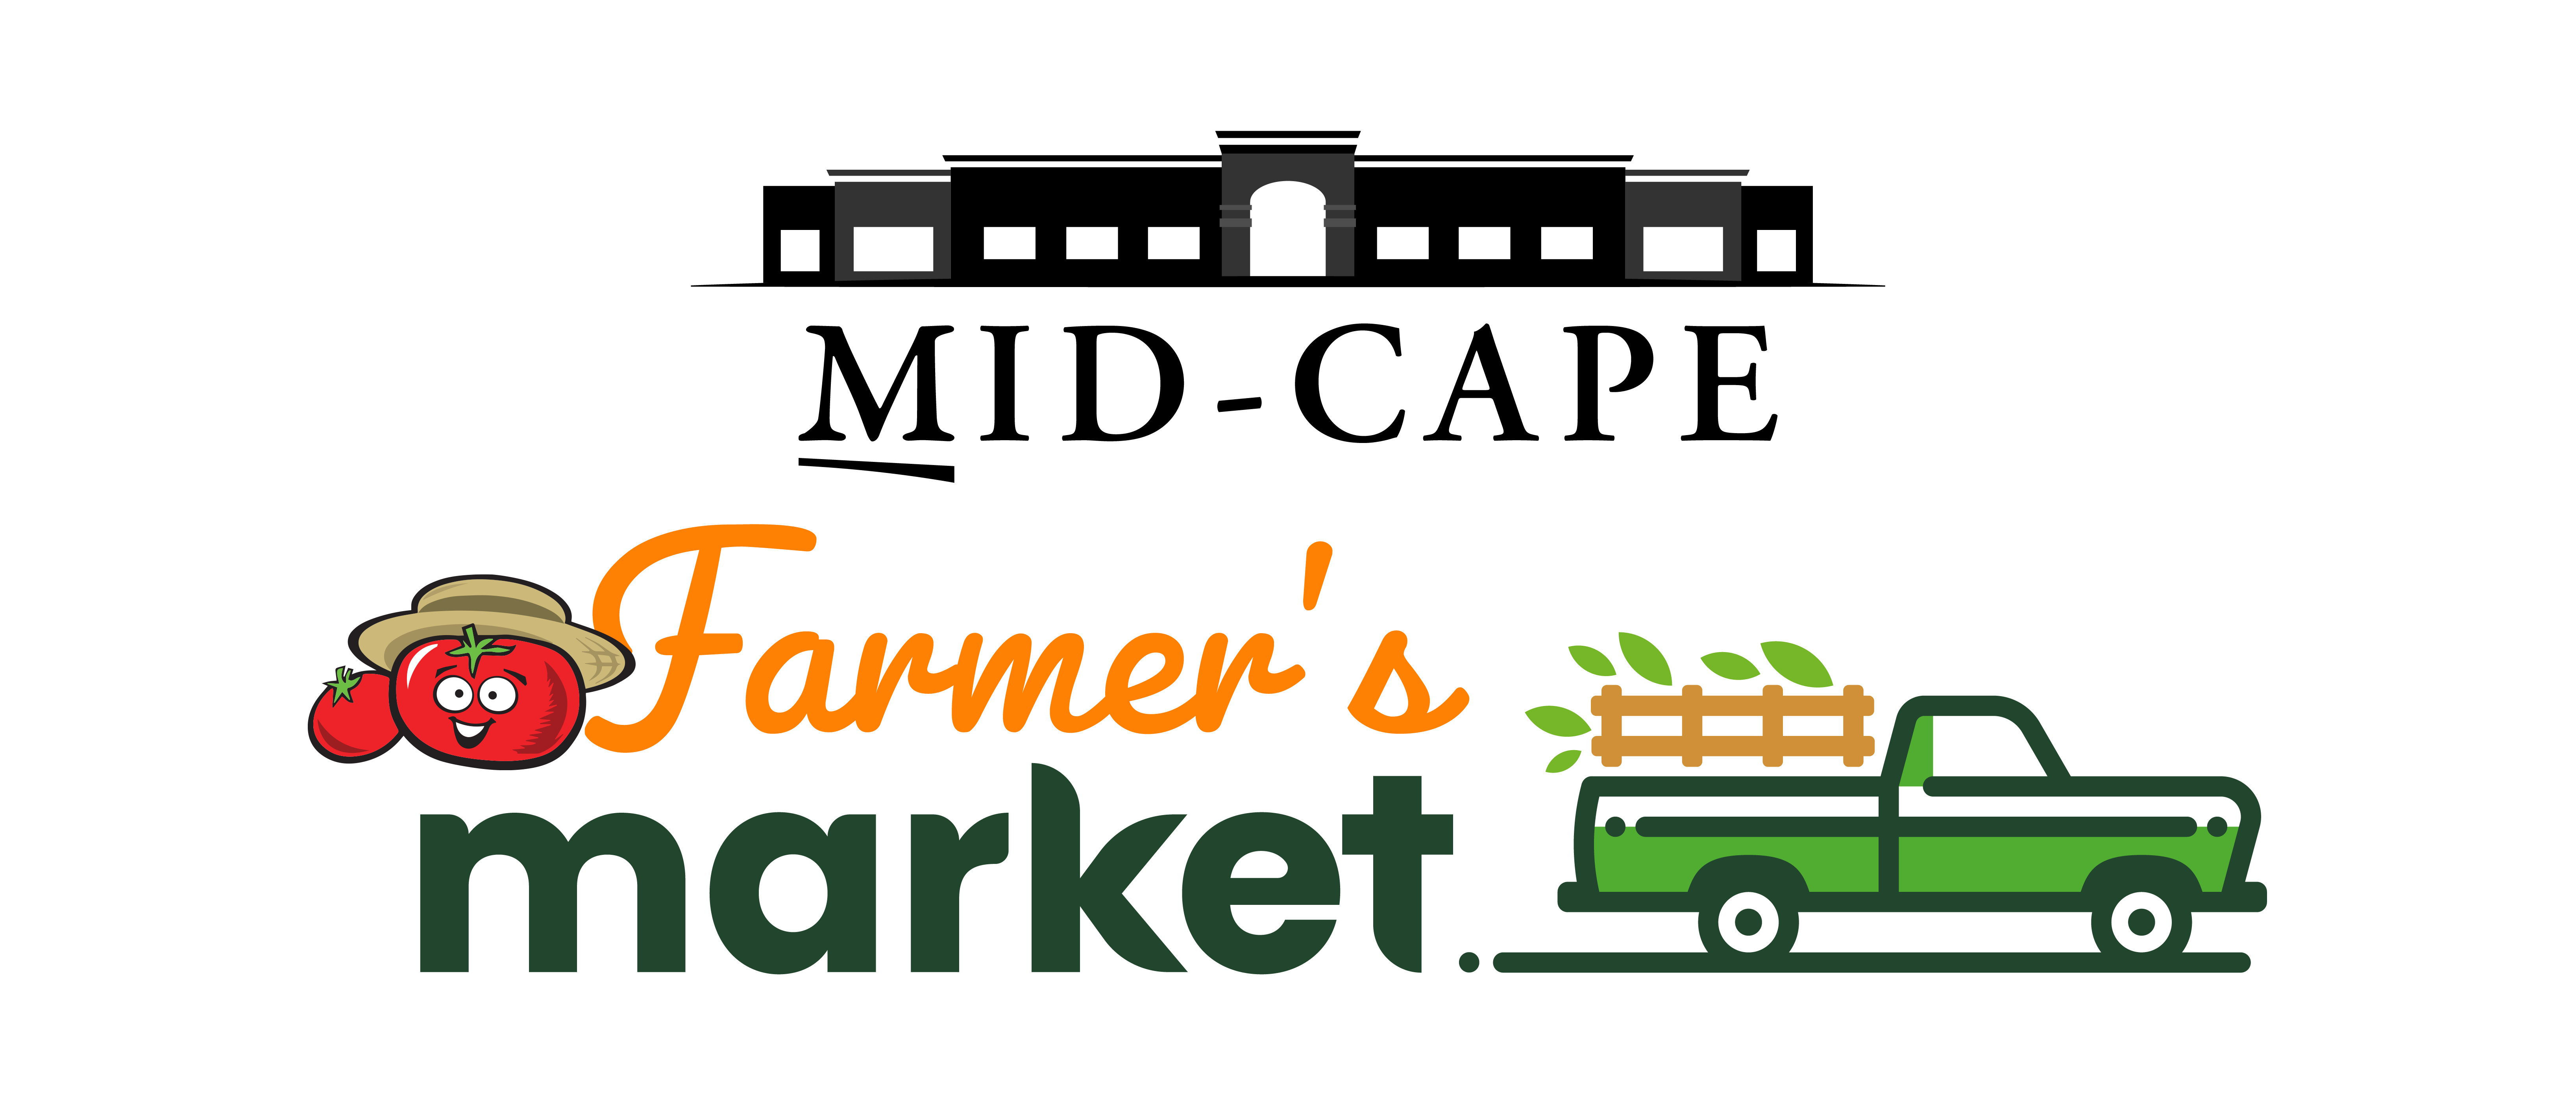 Mid-Cape Mercola Market logo